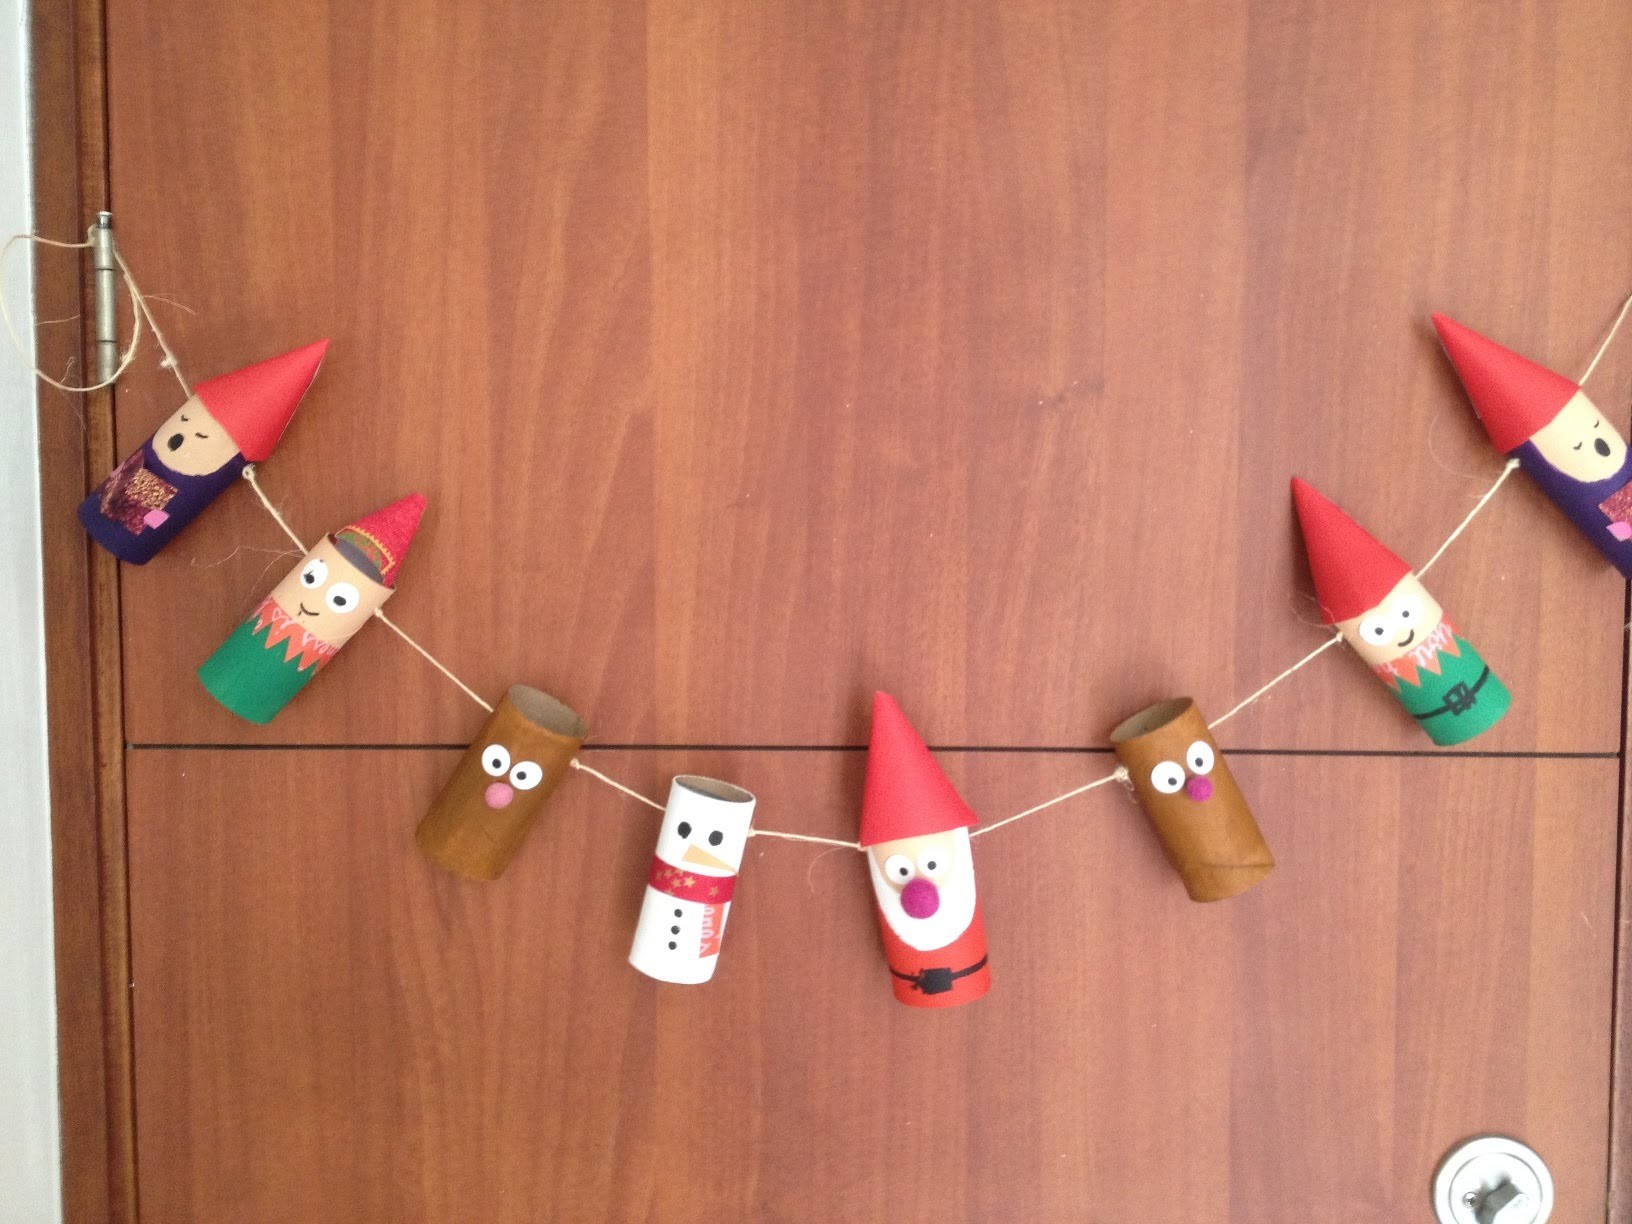 Especial de navidad: banner con rollos.tubos de papel reciclado para decorar la puerta